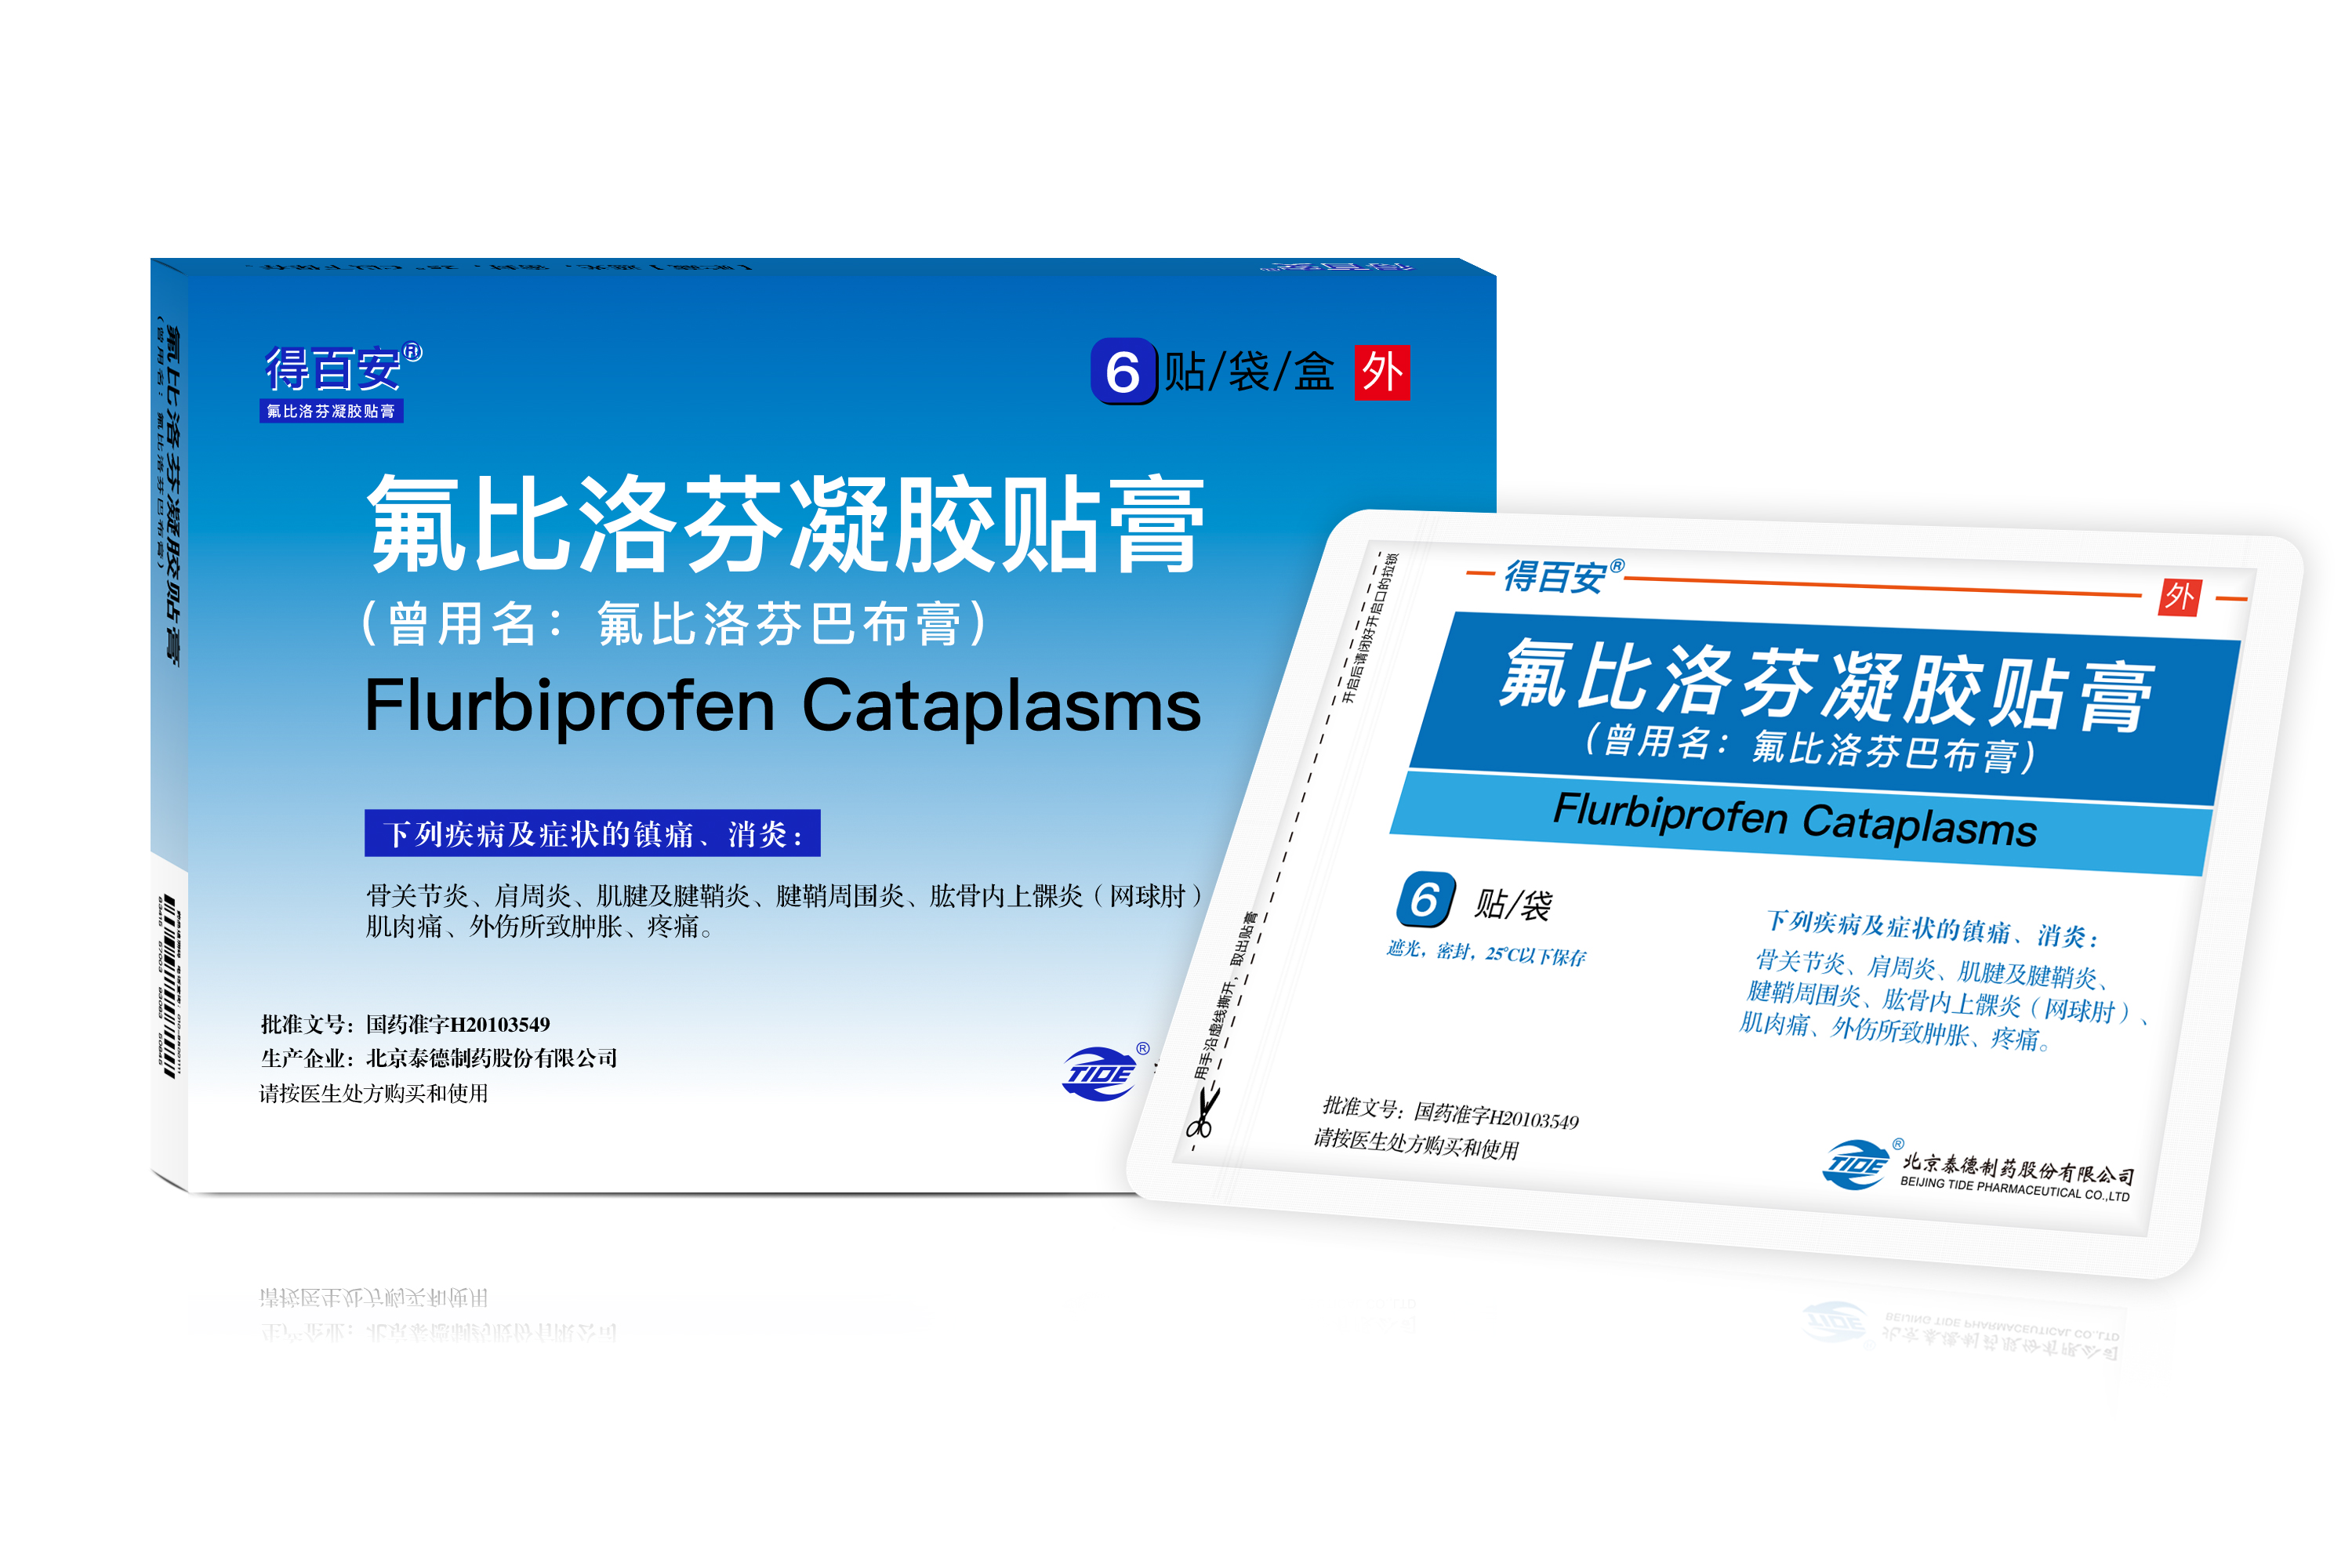 Flurbiprofen Cataplasms